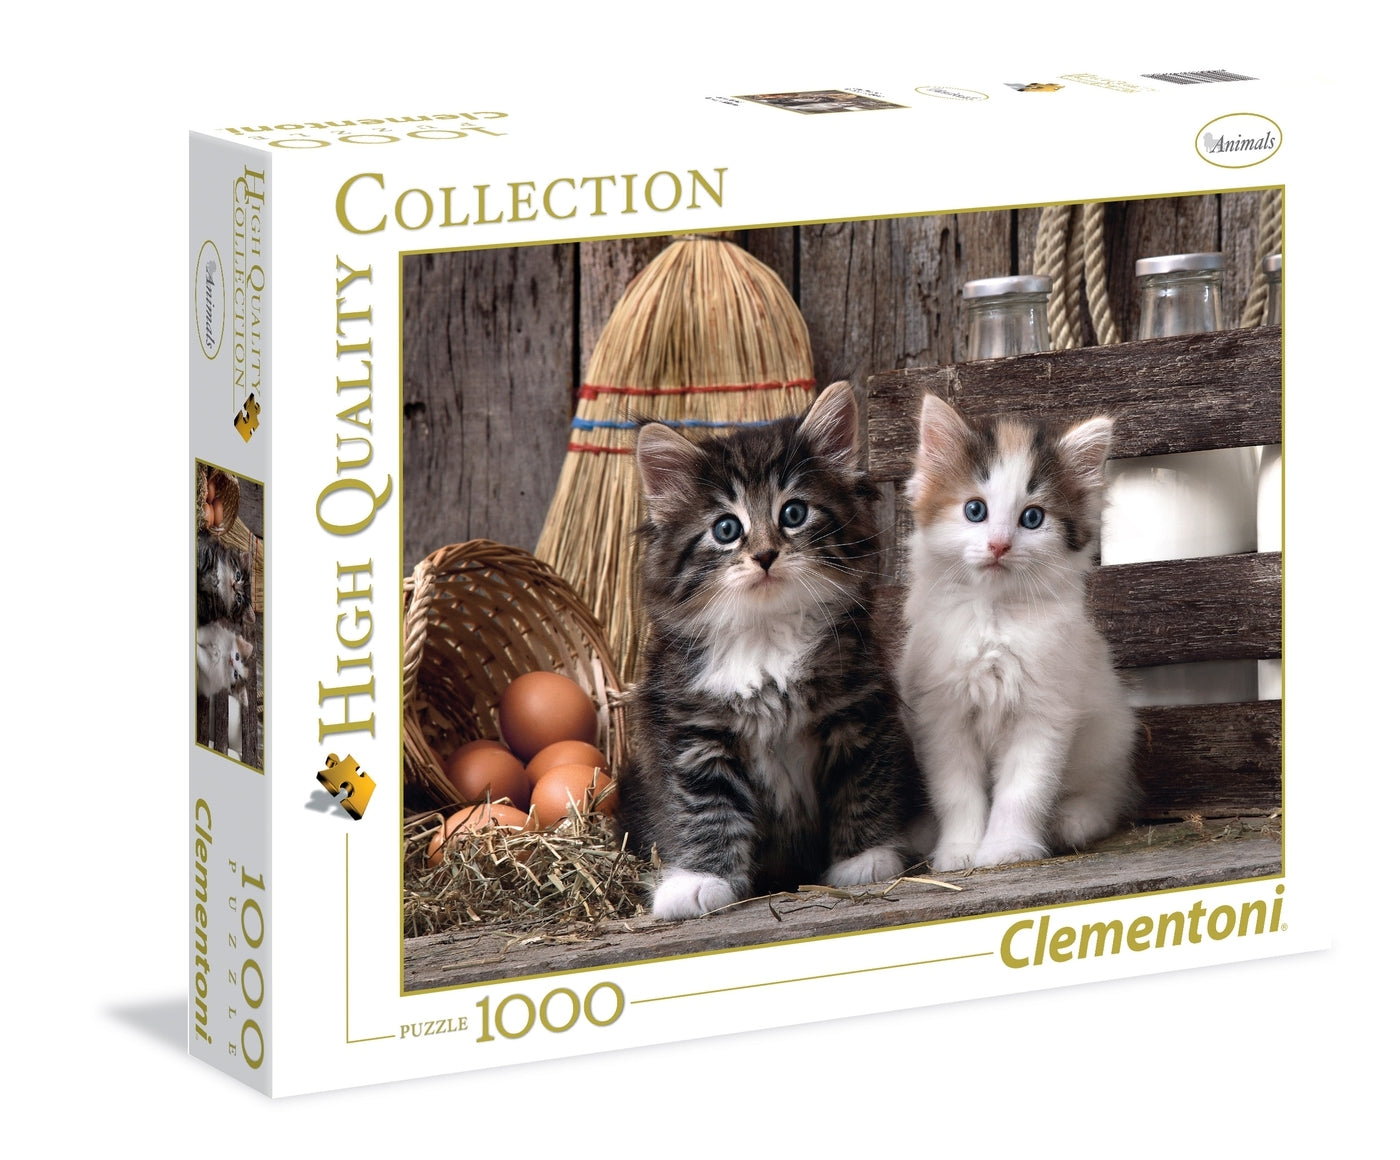 Clementoni: Lovely Kittens (1000pc Jigsaw)